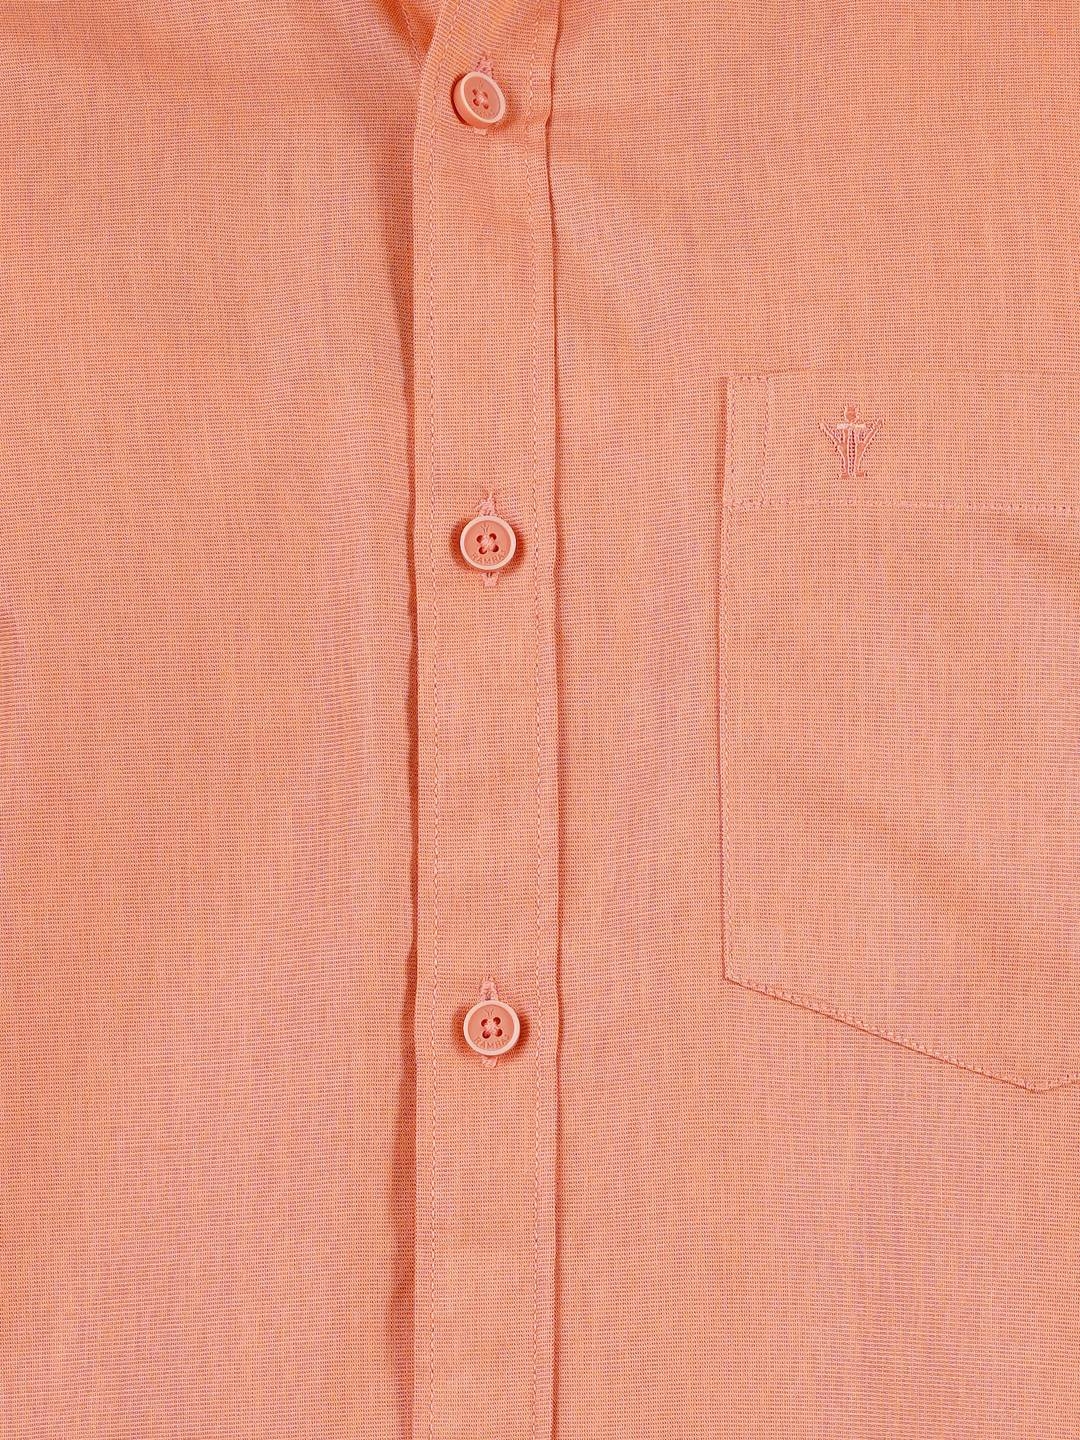 Ramraj Cotton Mens Cotton Orange Half Sleeves Shirt With Jari Dhoti Combo